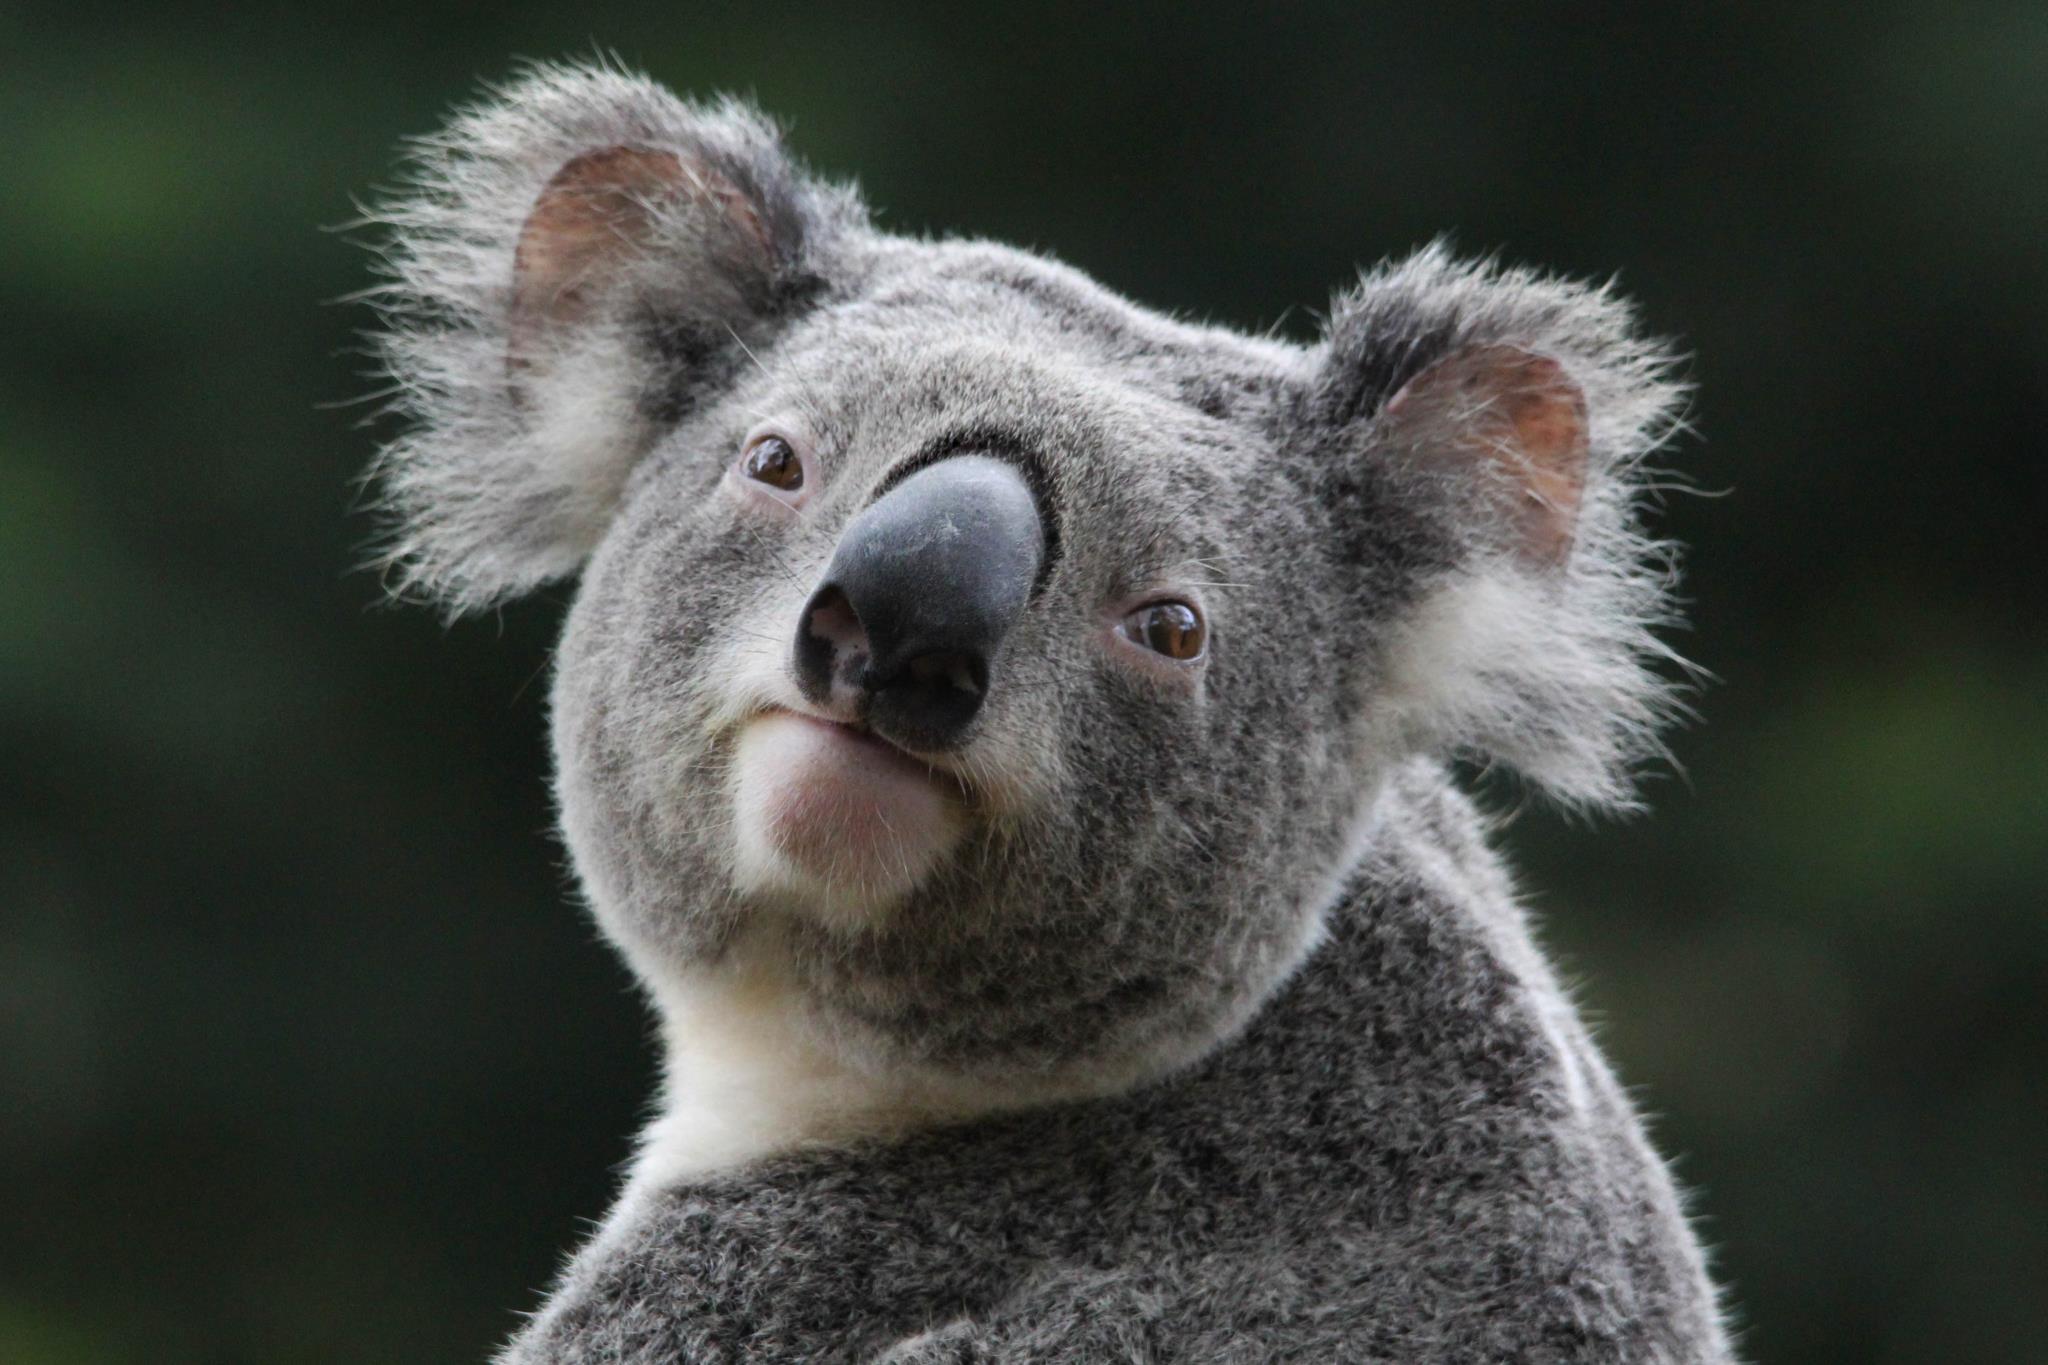 Hình nền với chú Koala đang ngủ say làm cho ai nhìn vào cũng thấy thư giãn. Hoặc nếu bạn đang tìm kiếm một hình nền đơn giản mà đẹp, có thể dễ dàng trang trí cho chiếc điện thoại của mình thì hình nền này là lựa chọn hoàn hảo dành cho bạn!